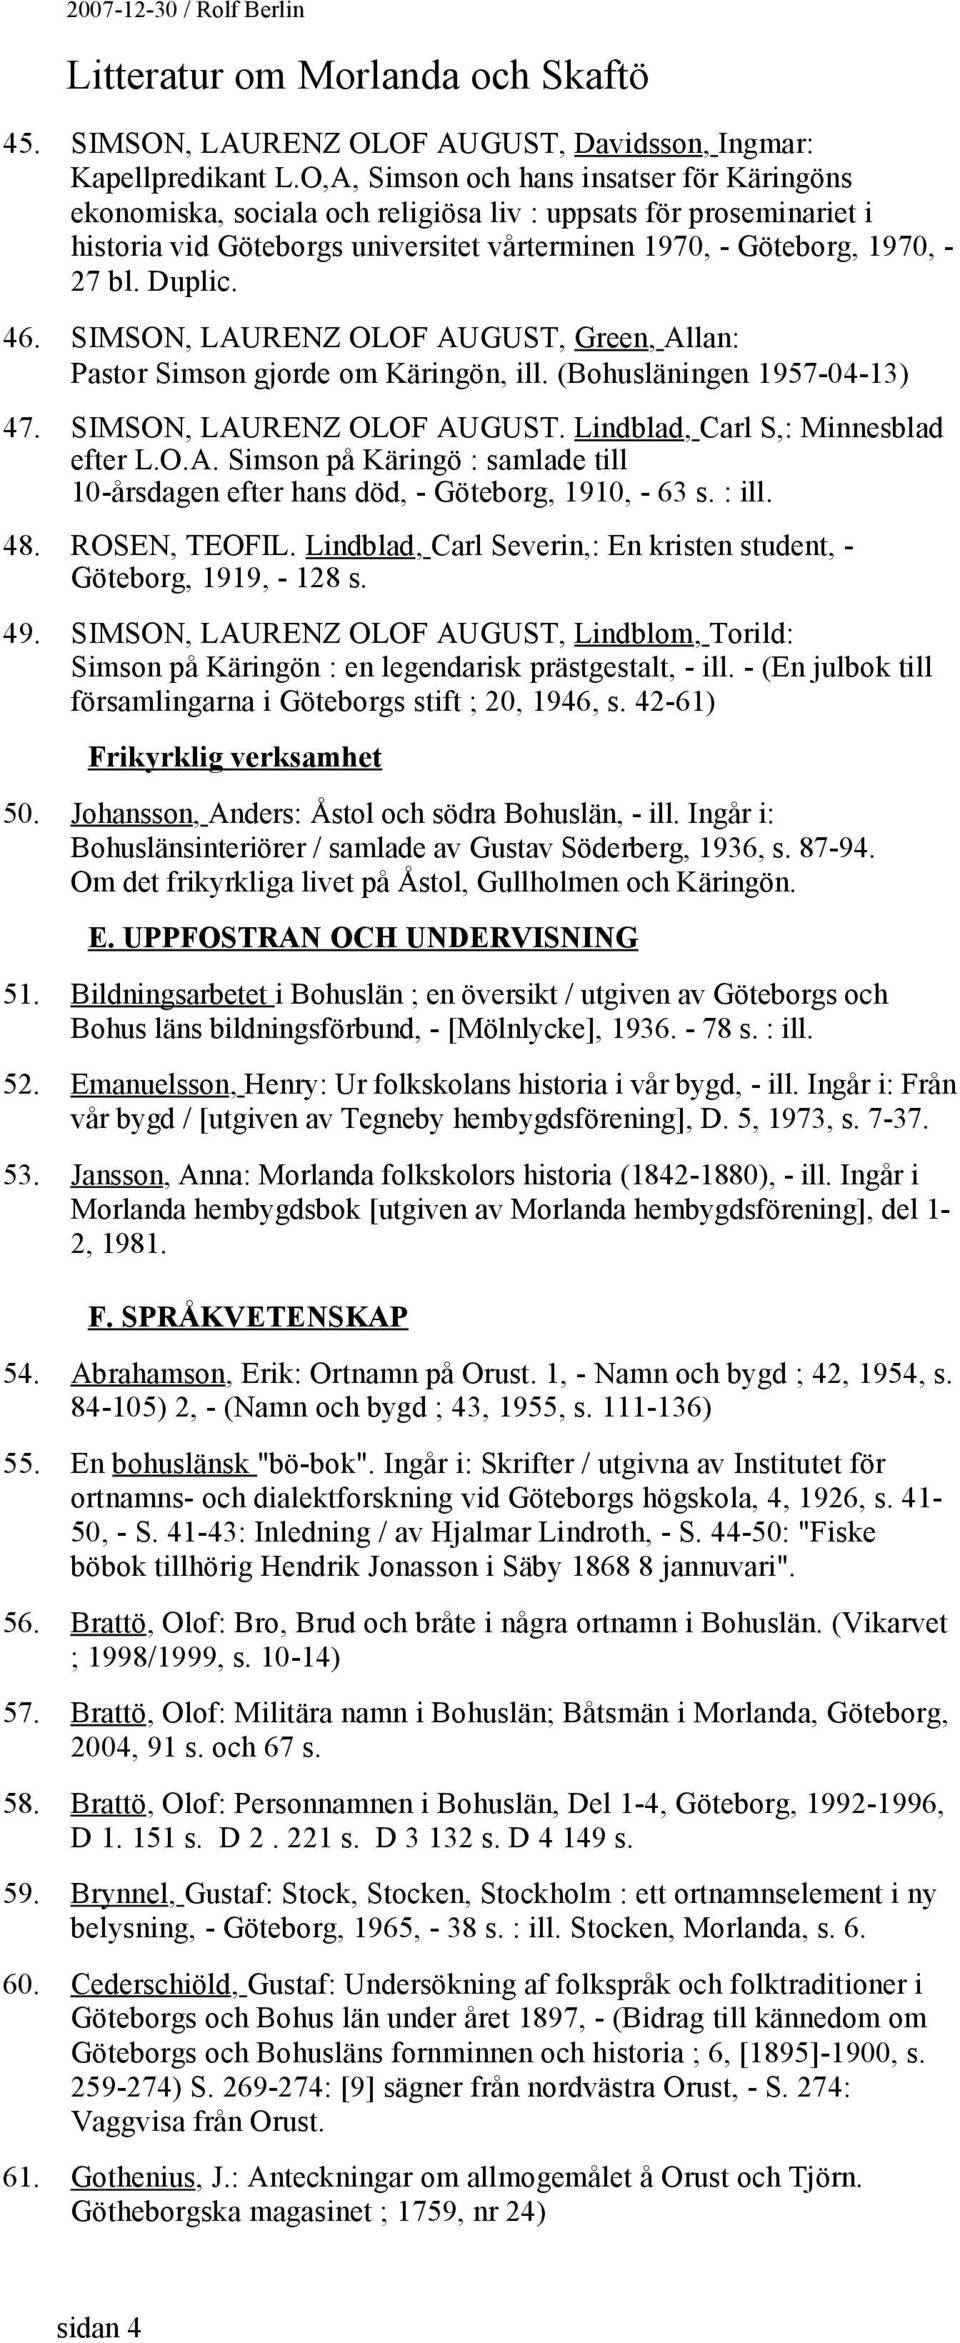 46. SIMSON, LAURENZ OLOF AUGUST, Green, Allan: Pastor Simson gjorde om Käringön, ill. (Bohusläningen 1957-04-13) 47. SIMSON, LAURENZ OLOF AUGUST. Lindblad, Carl S,: Minnesblad efter L.O.A. Simson på Käringö : samlade till 10-årsdagen efter hans död, - Göteborg, 1910, - 63 s.